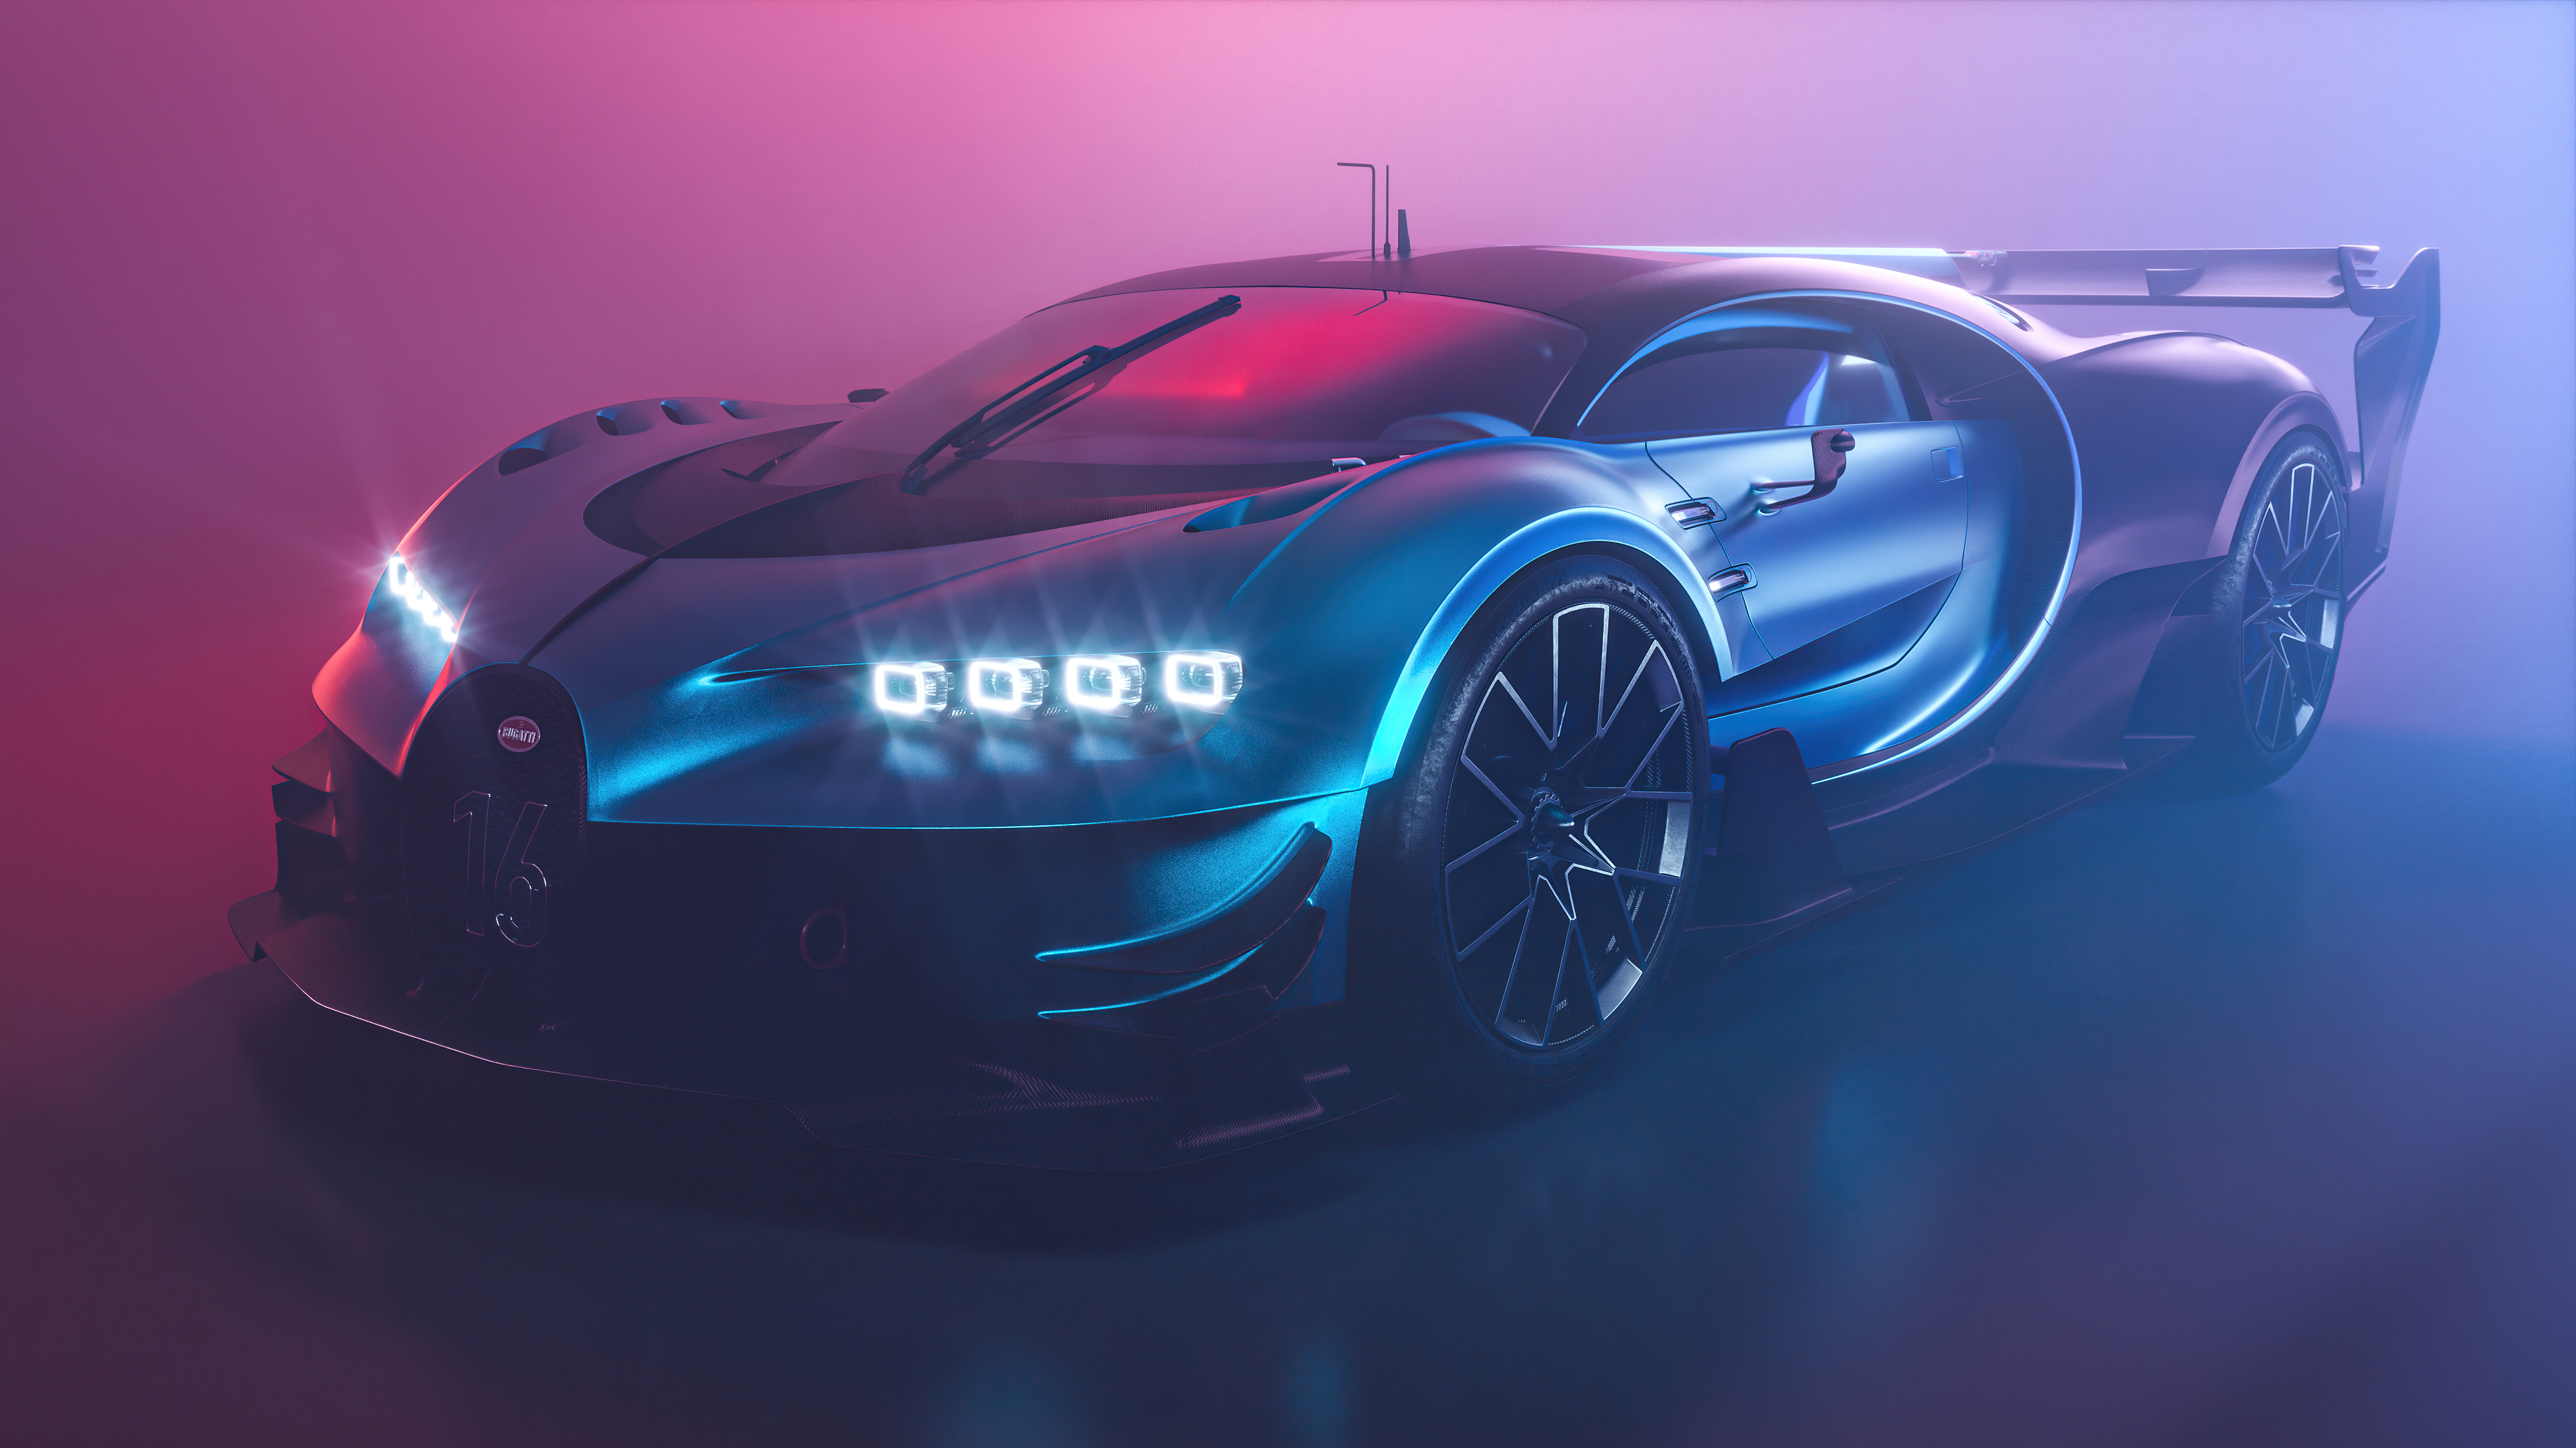 Neon Bugatti Wallpapers